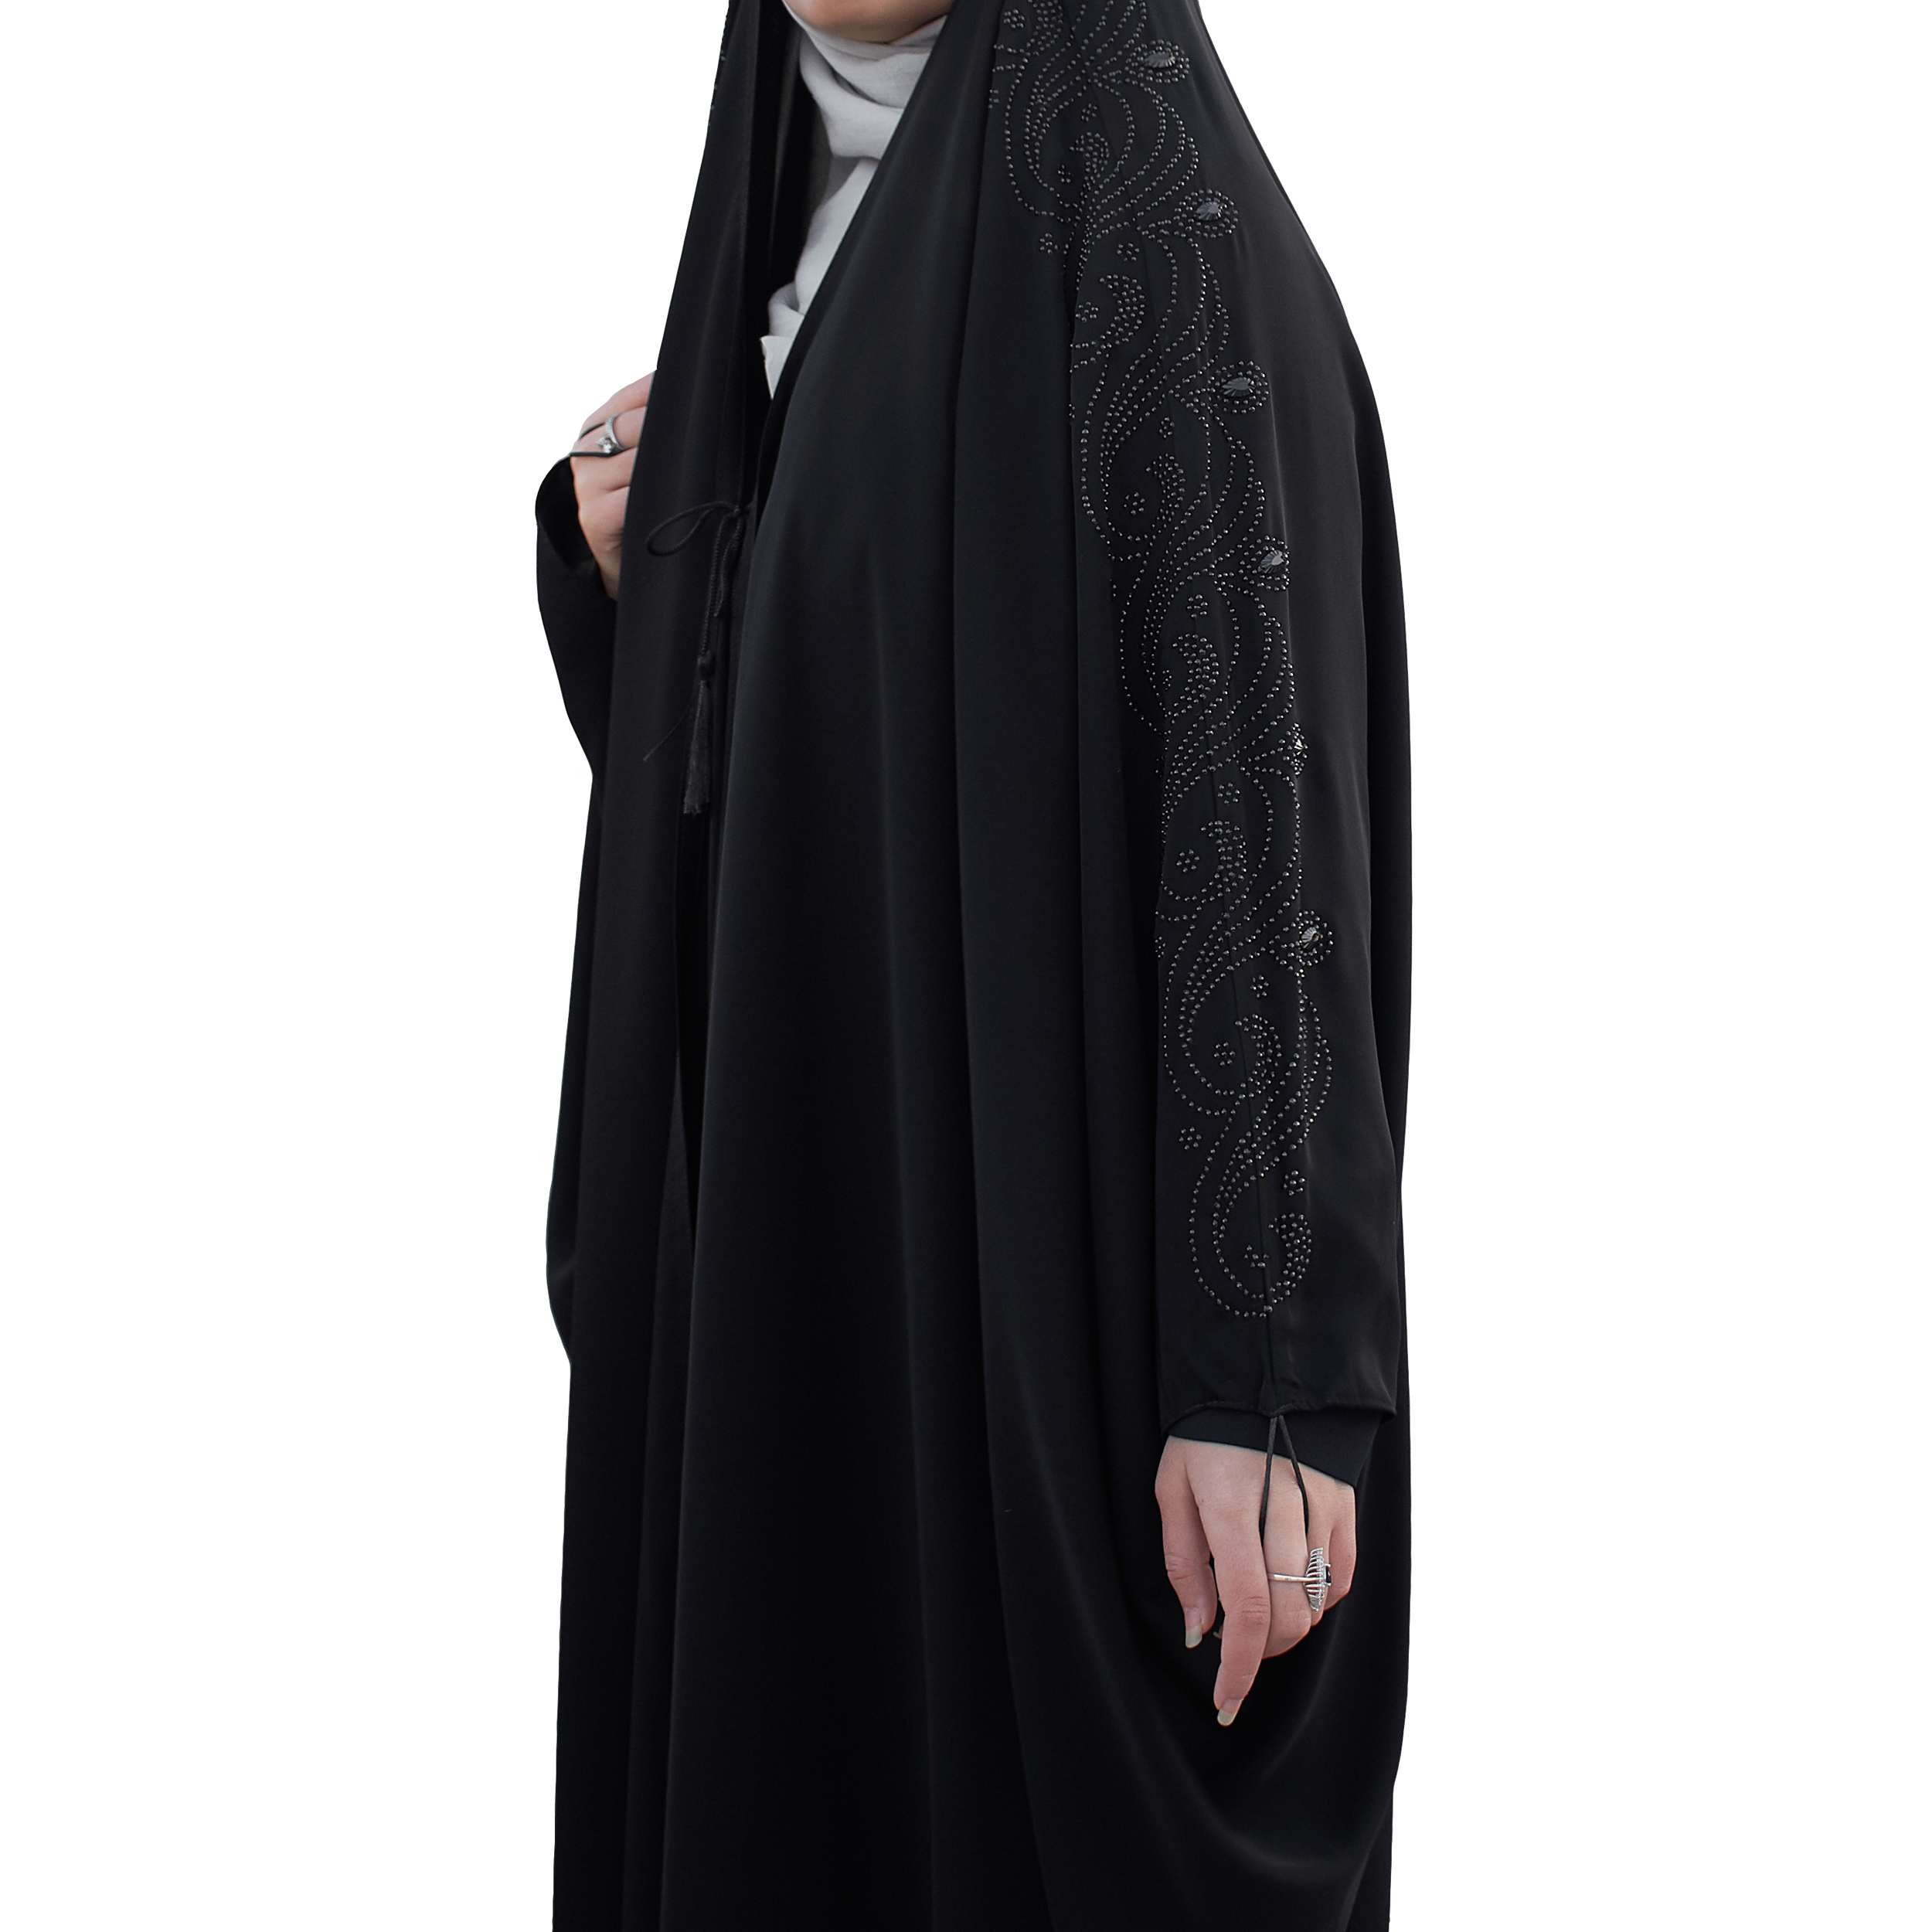 چادر حجاب فاطمی مدل اسرا کد Kan 1048